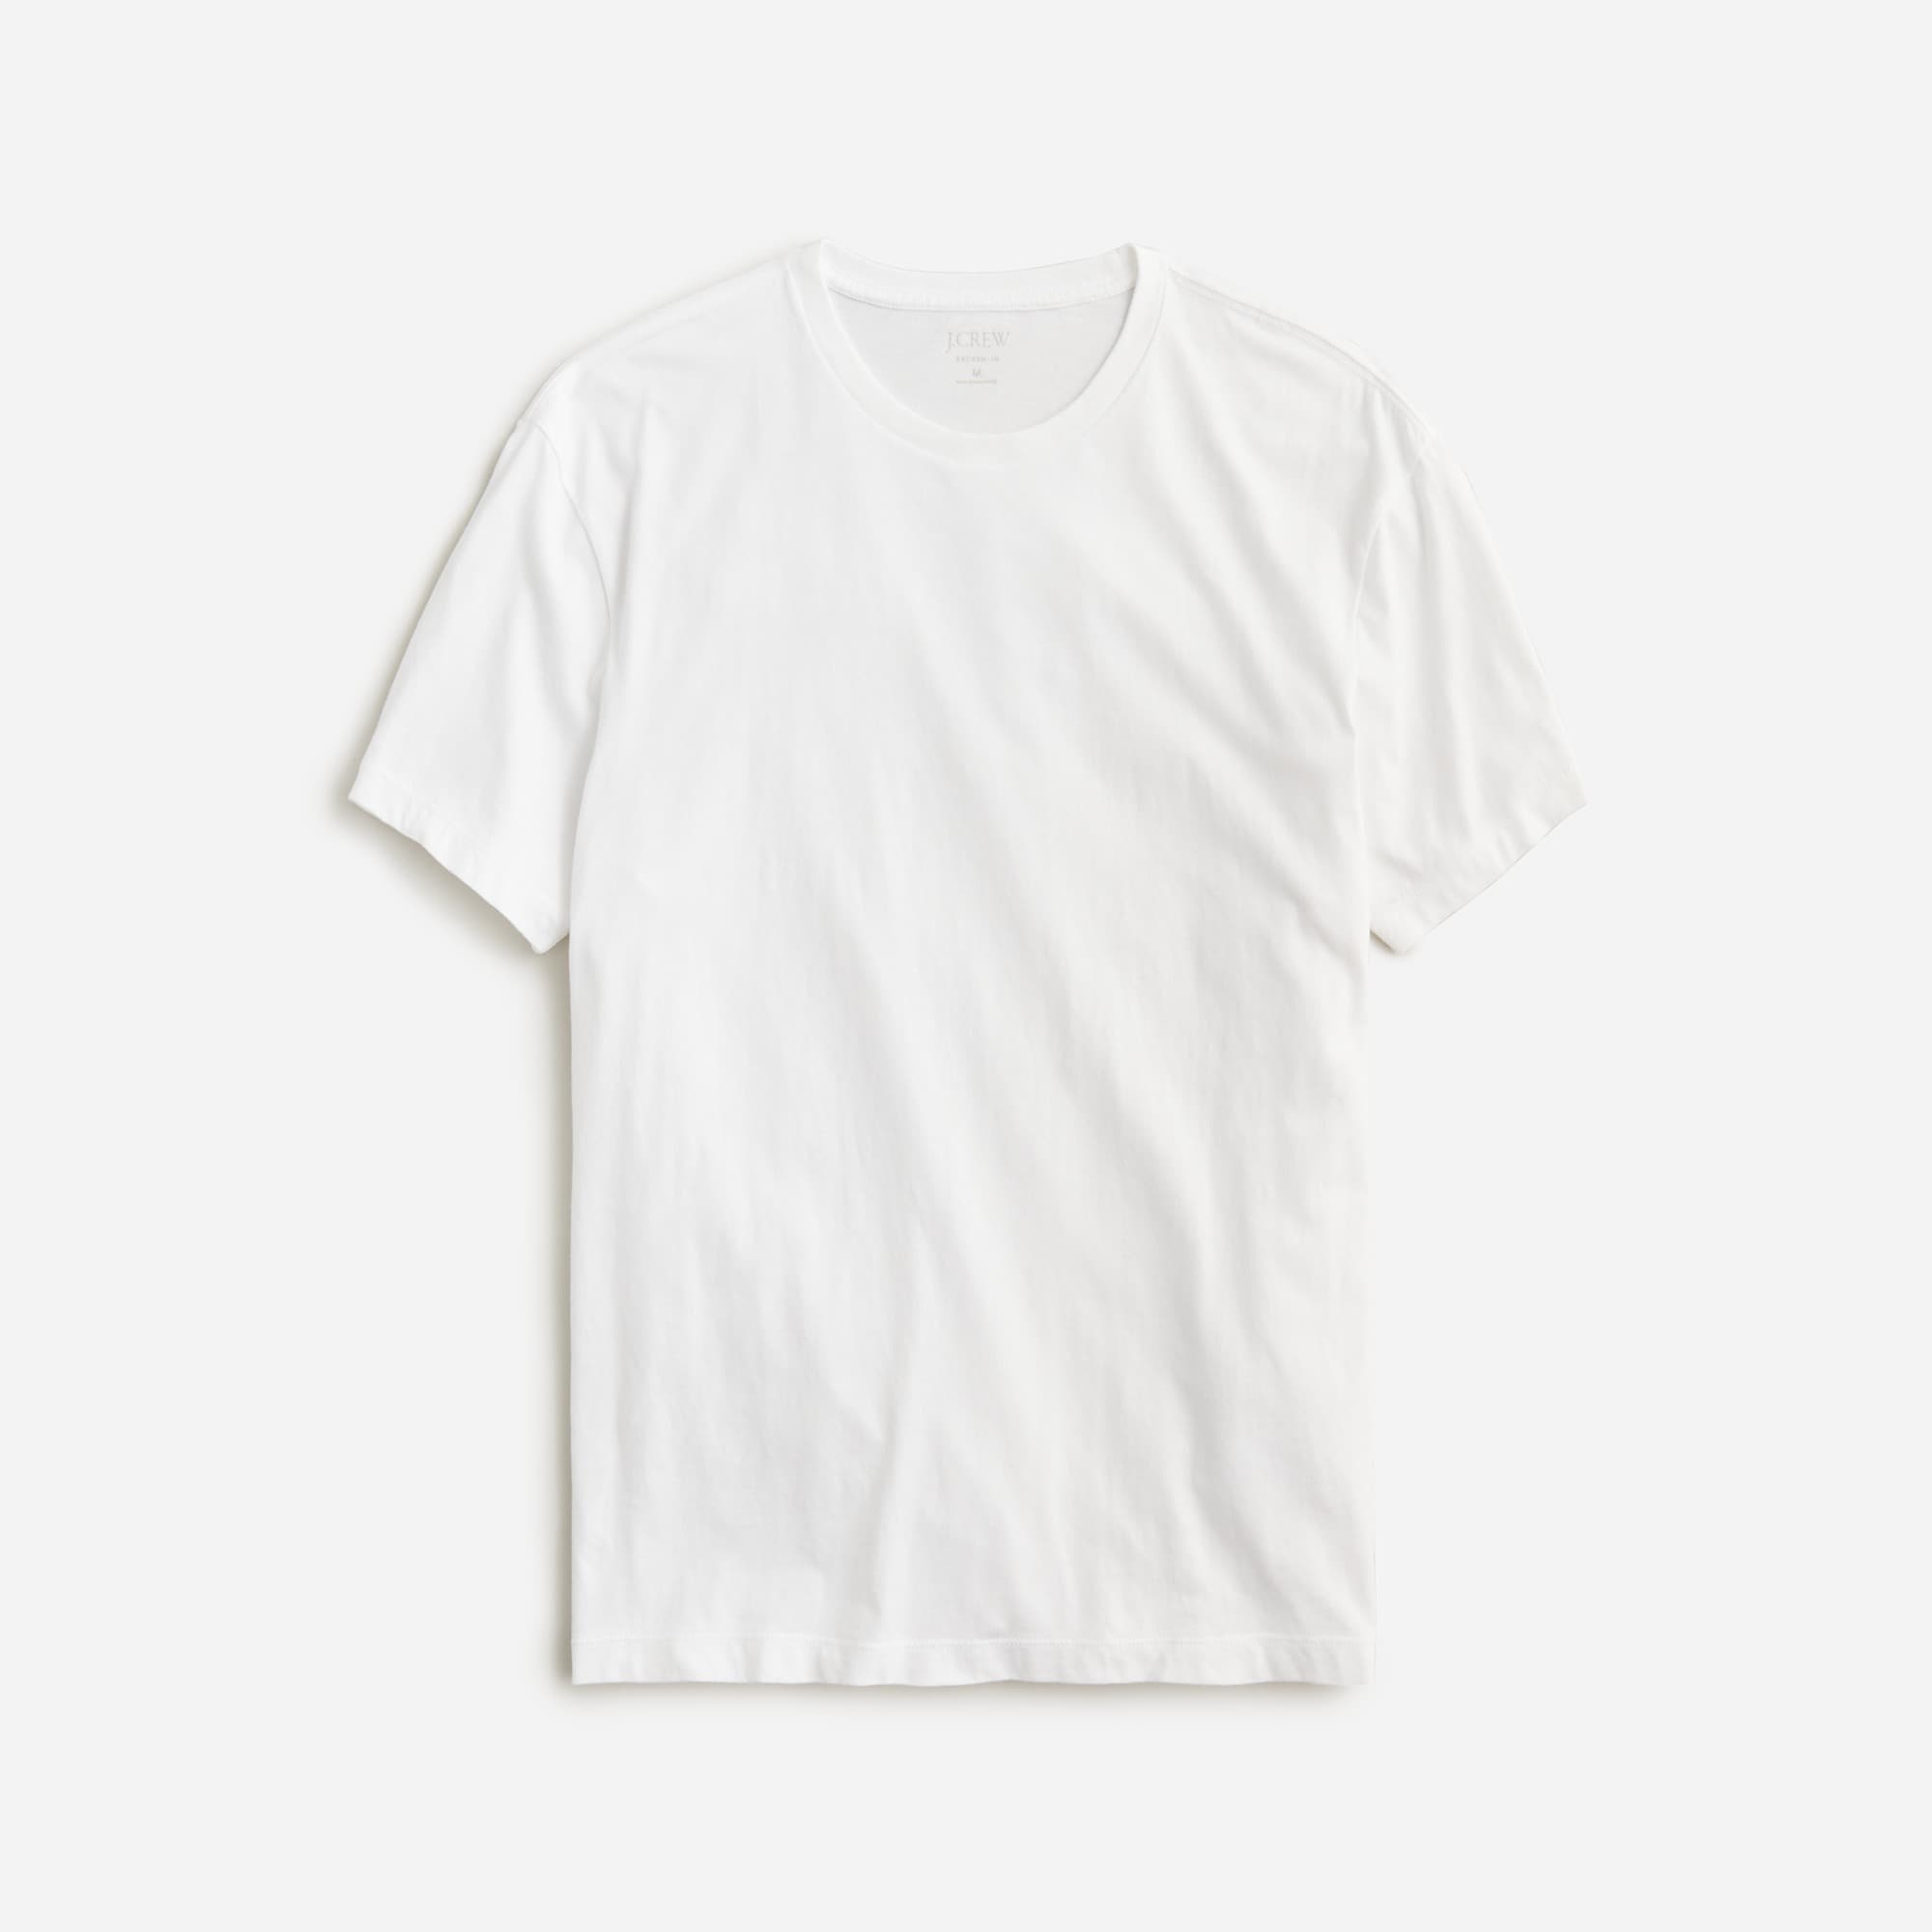 Short Sleeves V Neck Plain,Deals,Deals Under 5 Dollars,Customer